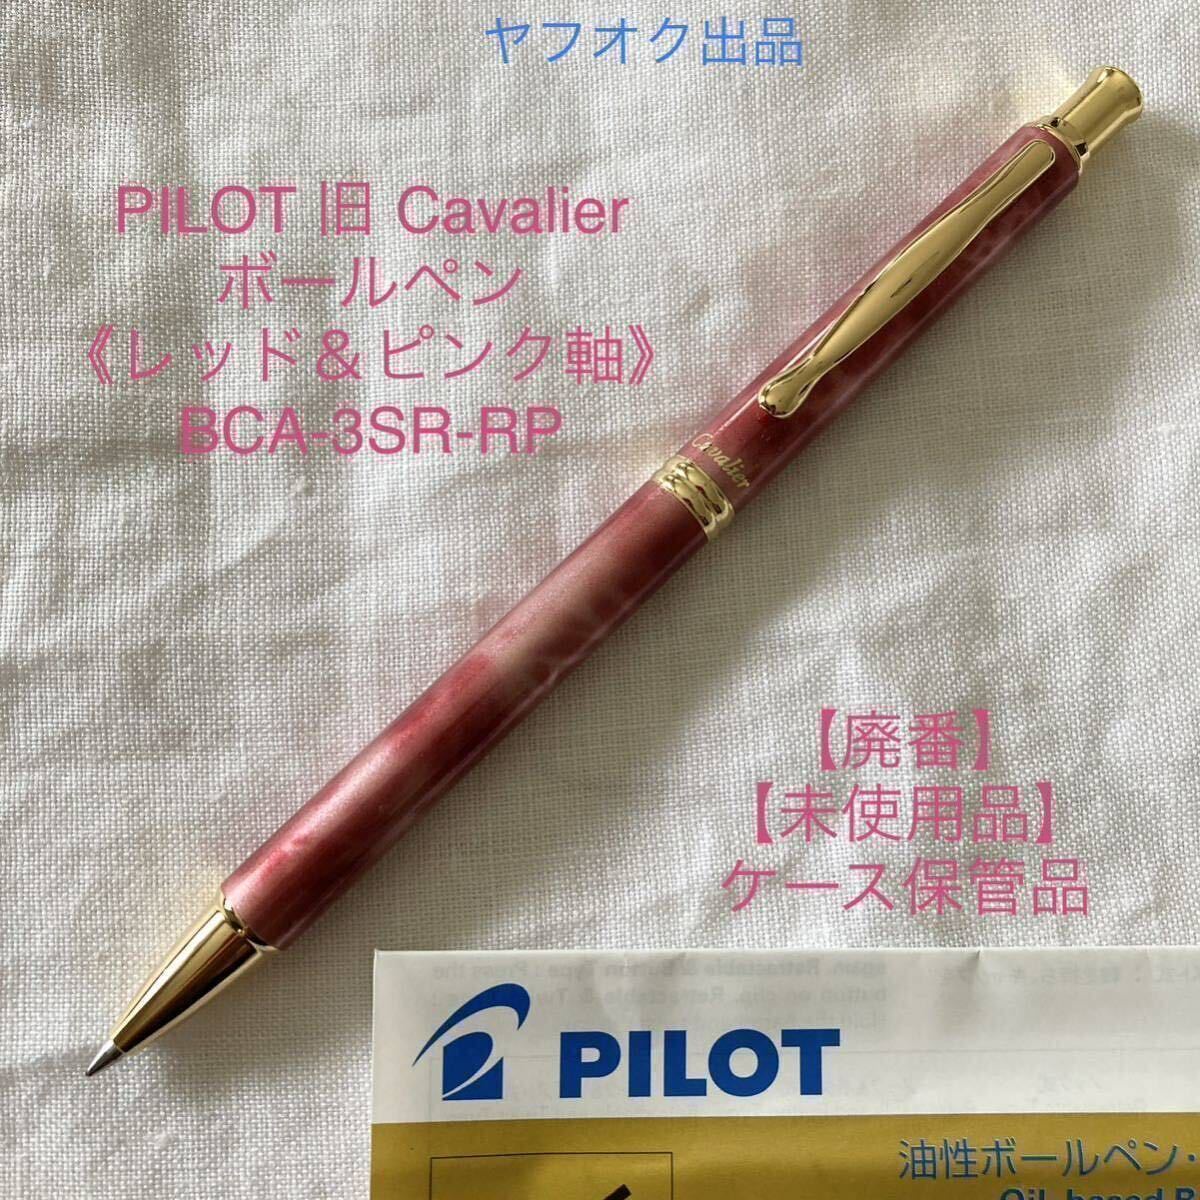 【未使用品】【廃番】パイロット カヴァリエ ボールペン 《レッド&ピンク軸》 PILOT Cavalier BCA-3SR-RP【ケース無し価格】_画像1